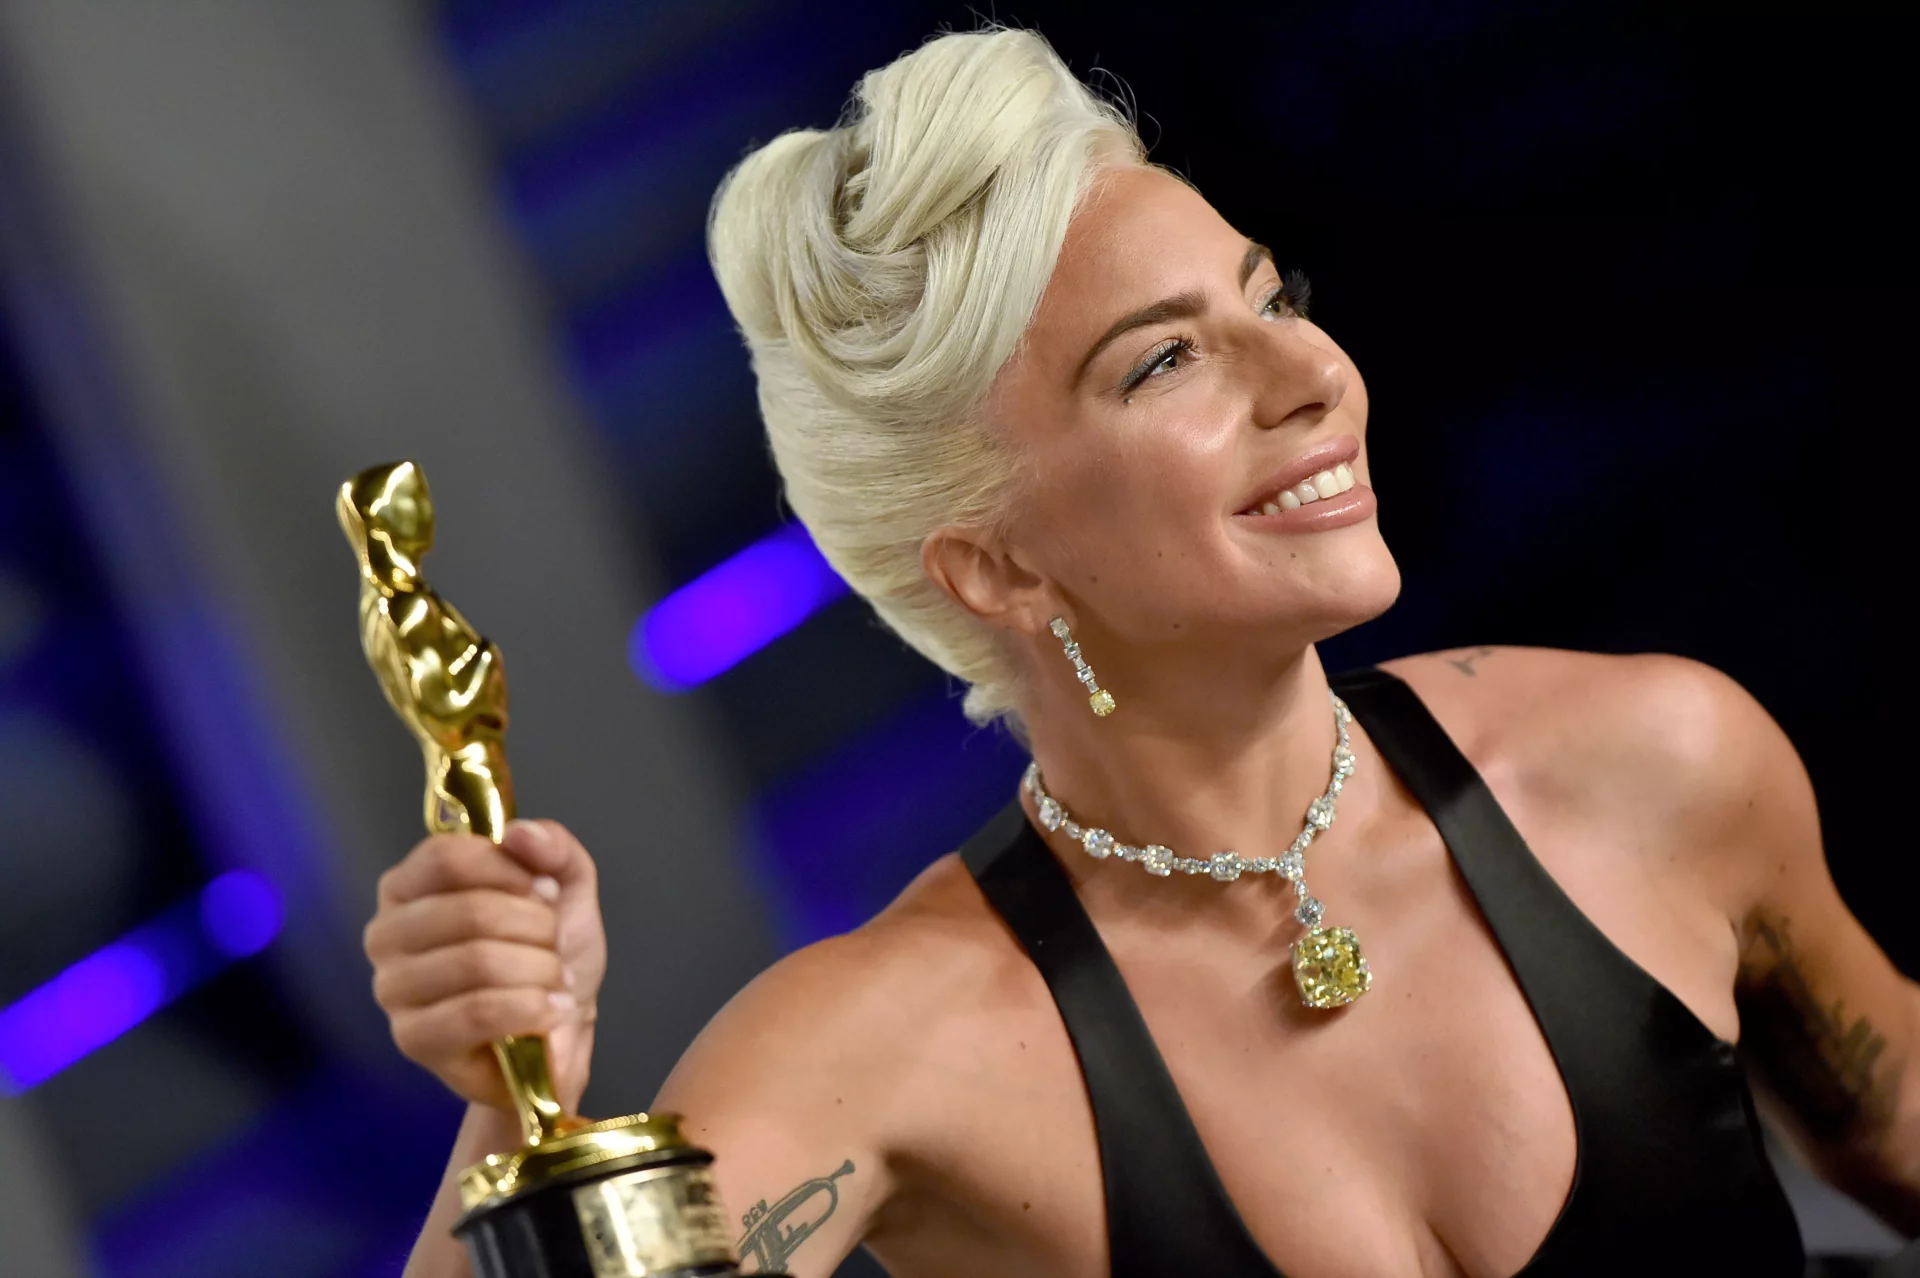 Diretor explica por que Lady Gaga abandonou filme com Brad Pitt